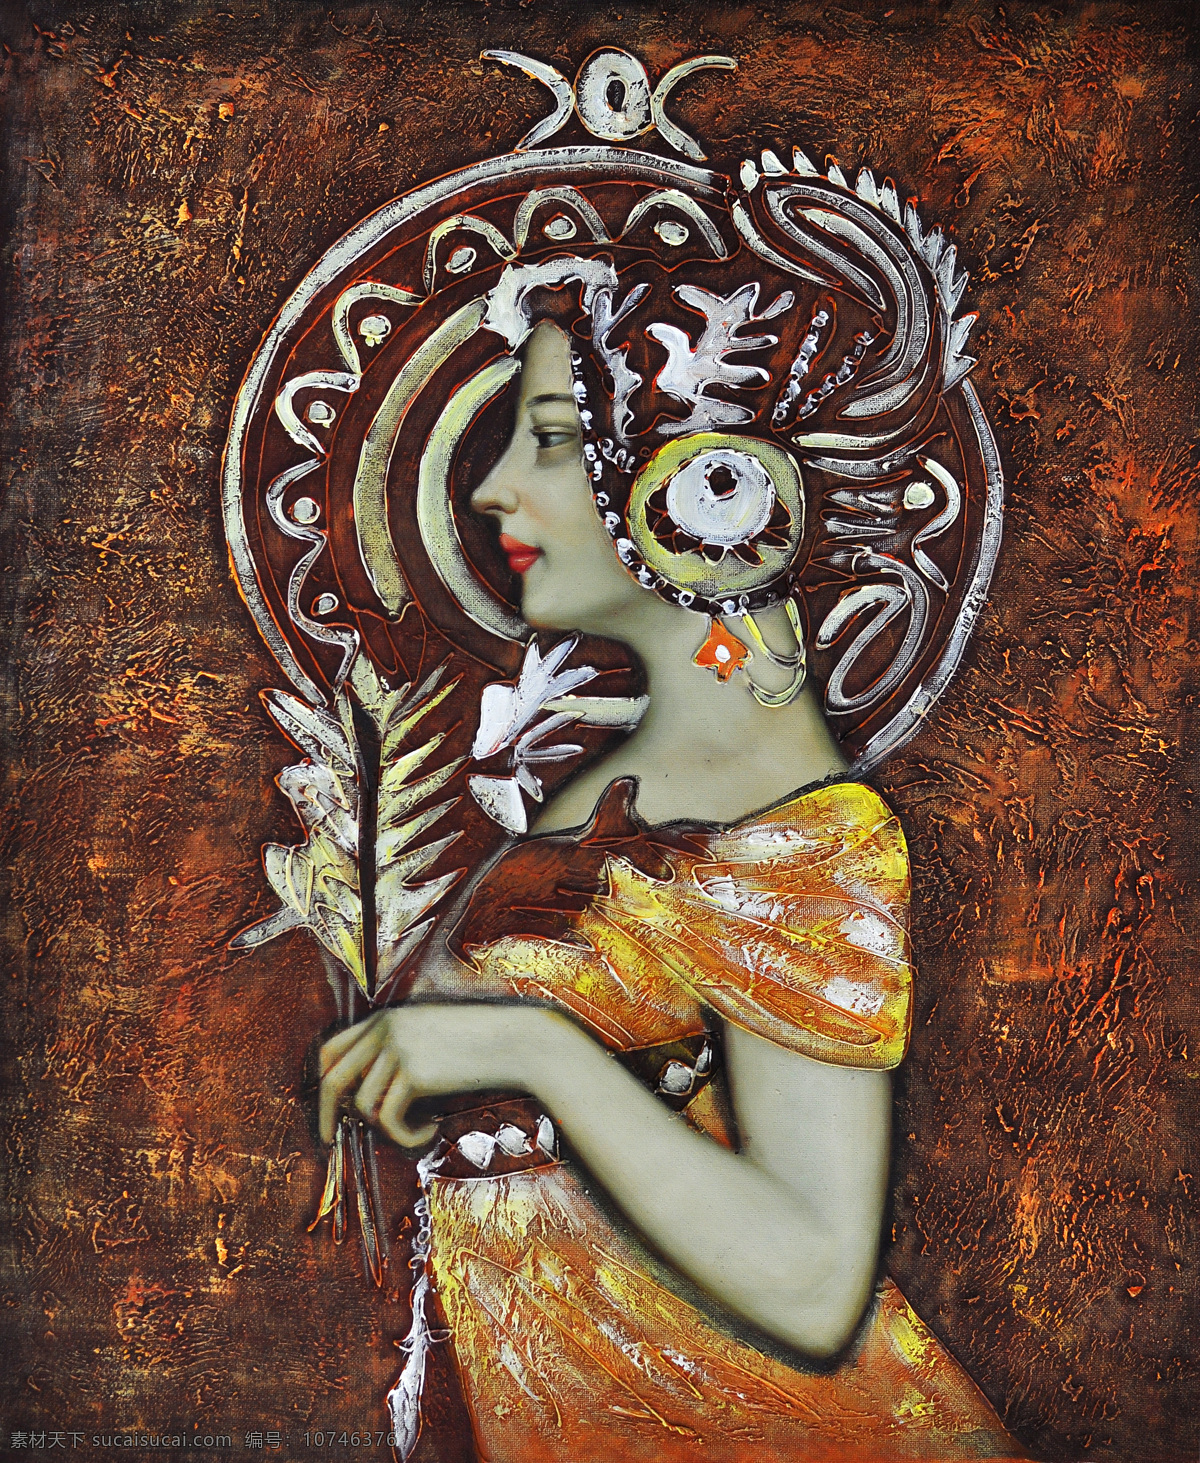 印度 女性 油画 油画写生 绘画艺术 人物油画 人物写生 人物肖像画 美女肖像画 挂画 壁画 书画文字 风景油画 植物油画 文化艺术